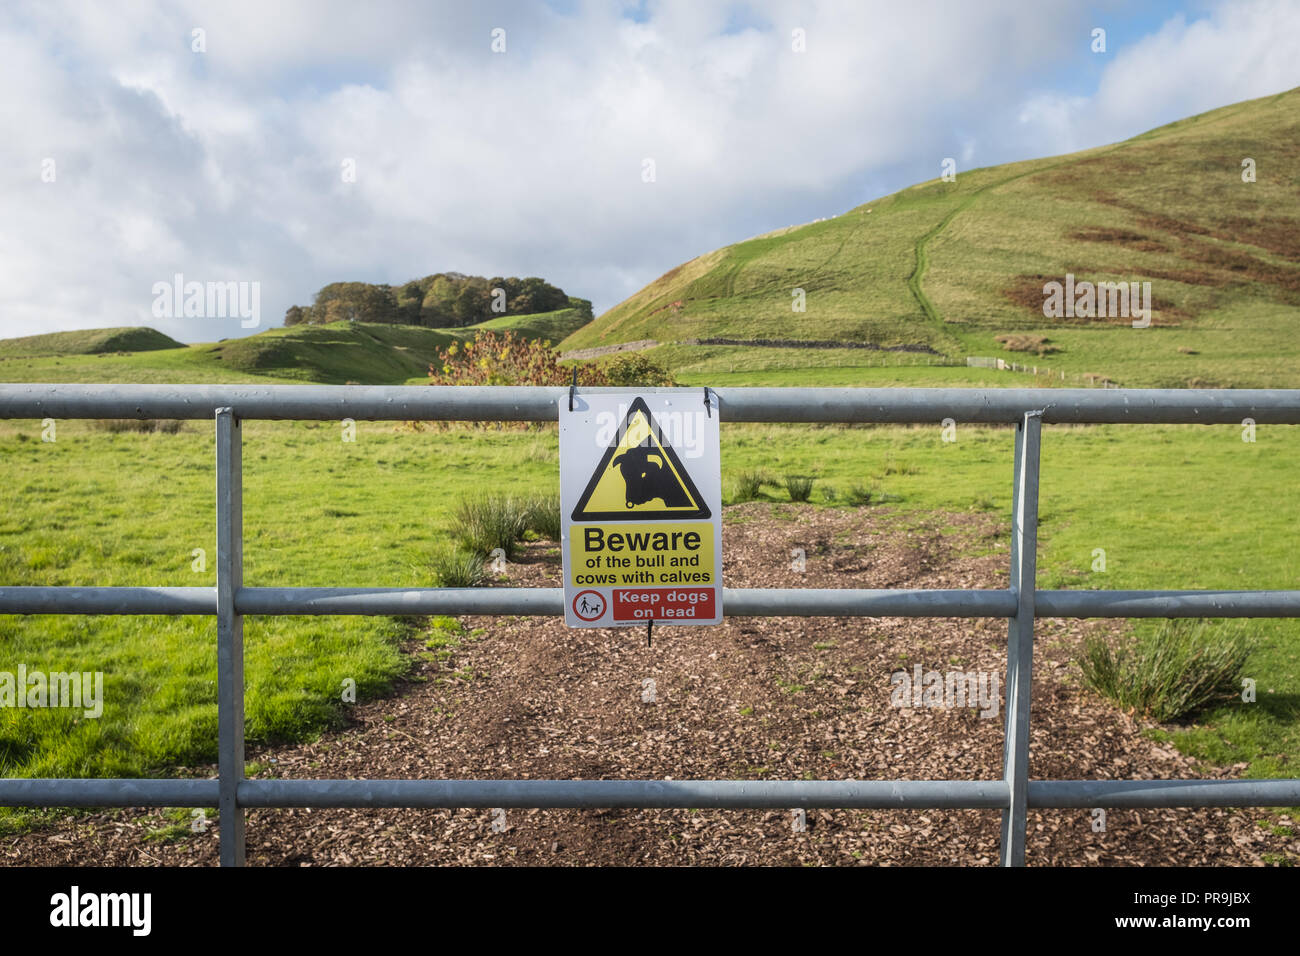 Sicherheitsinformationen an einem Betriebstor in Südwest-Schottland, die der Öffentlichkeit Informationen über sicheres Verhalten in der Nähe von Nutztieren geben. Stockfoto